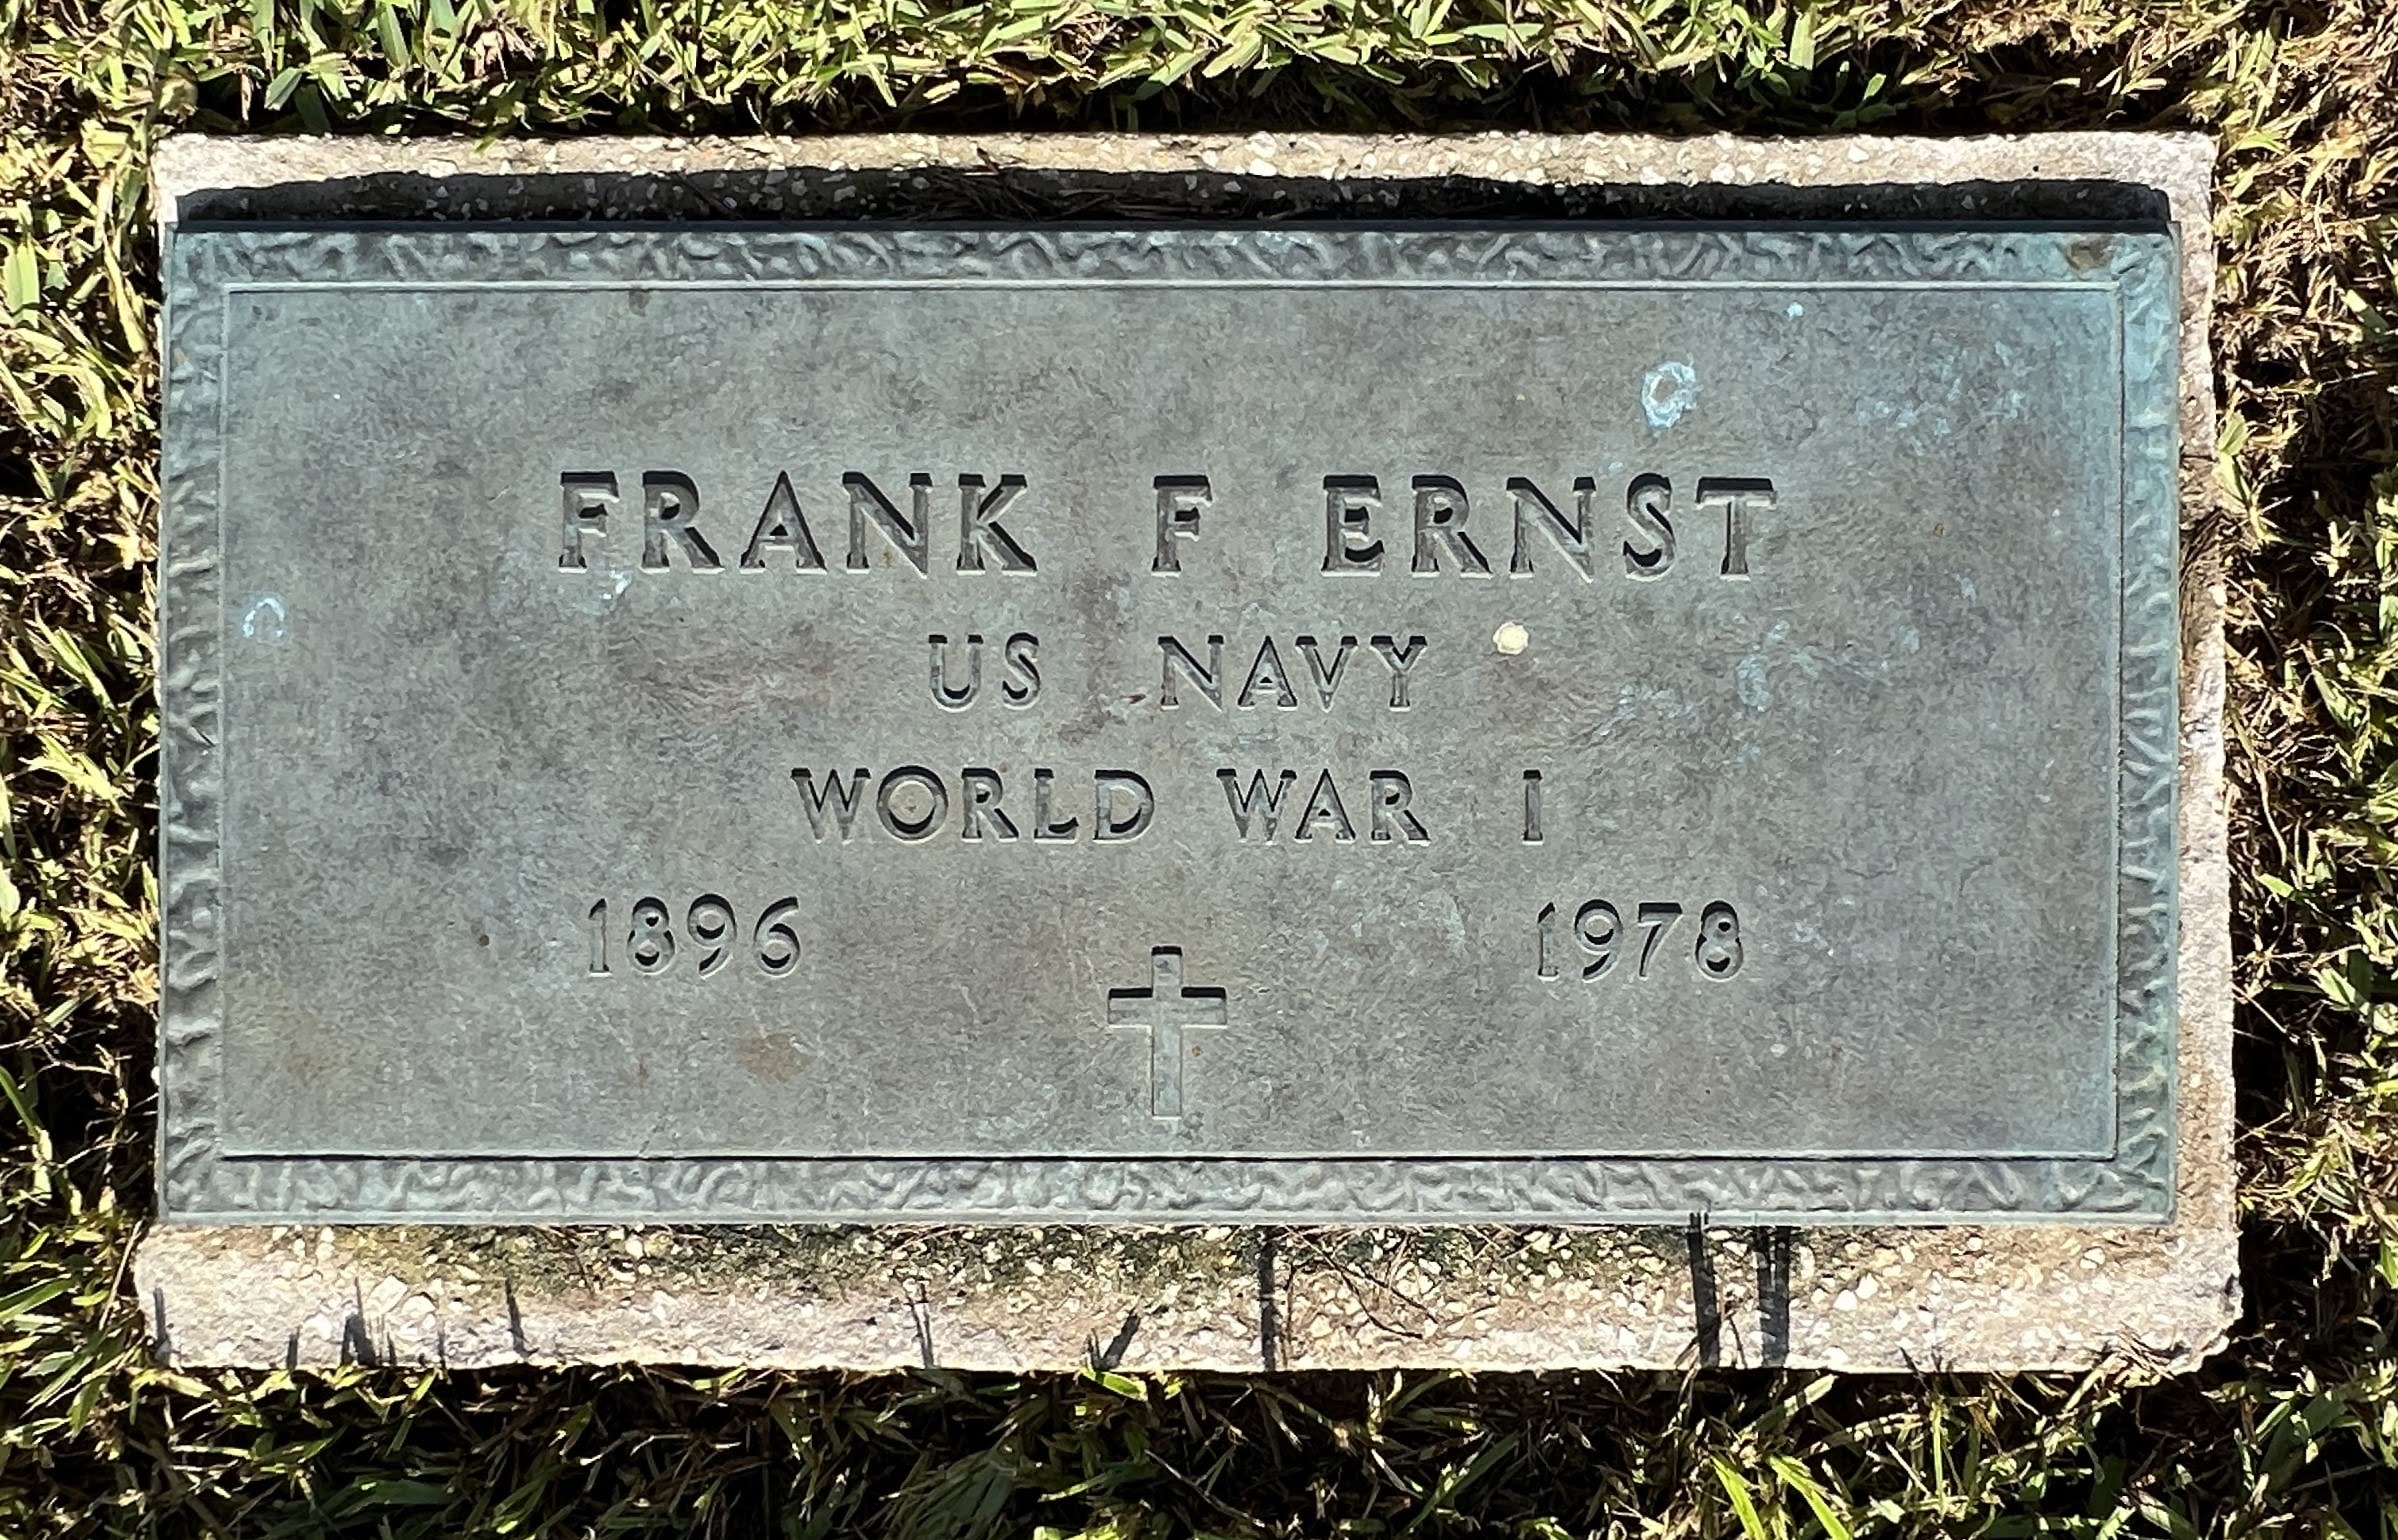 Frank F Ernst